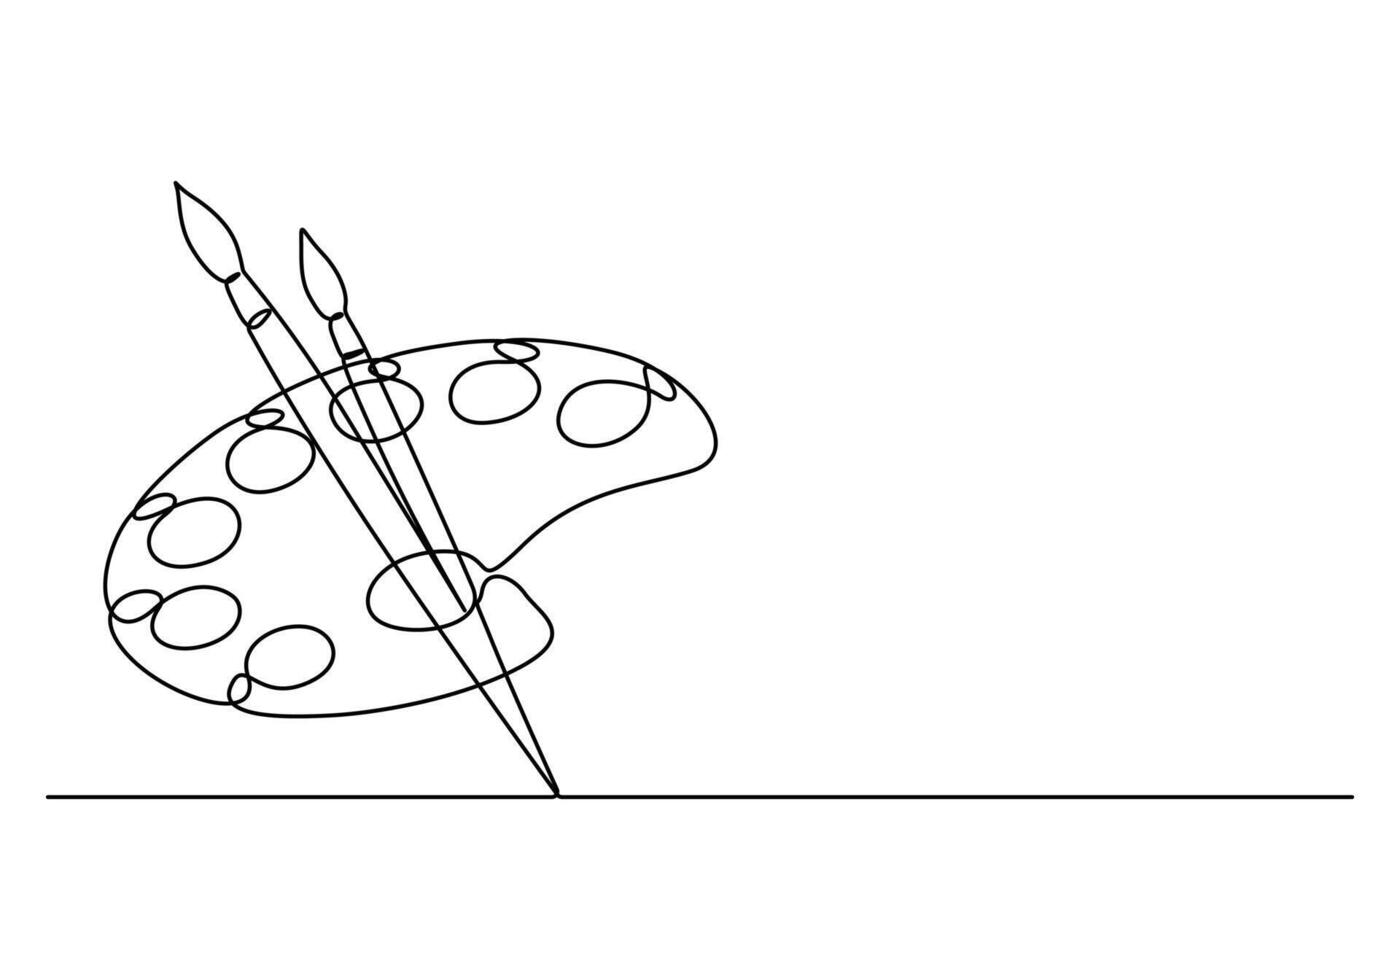 palet met verven en borstel een doorlopend lijn tekening vector illustratie